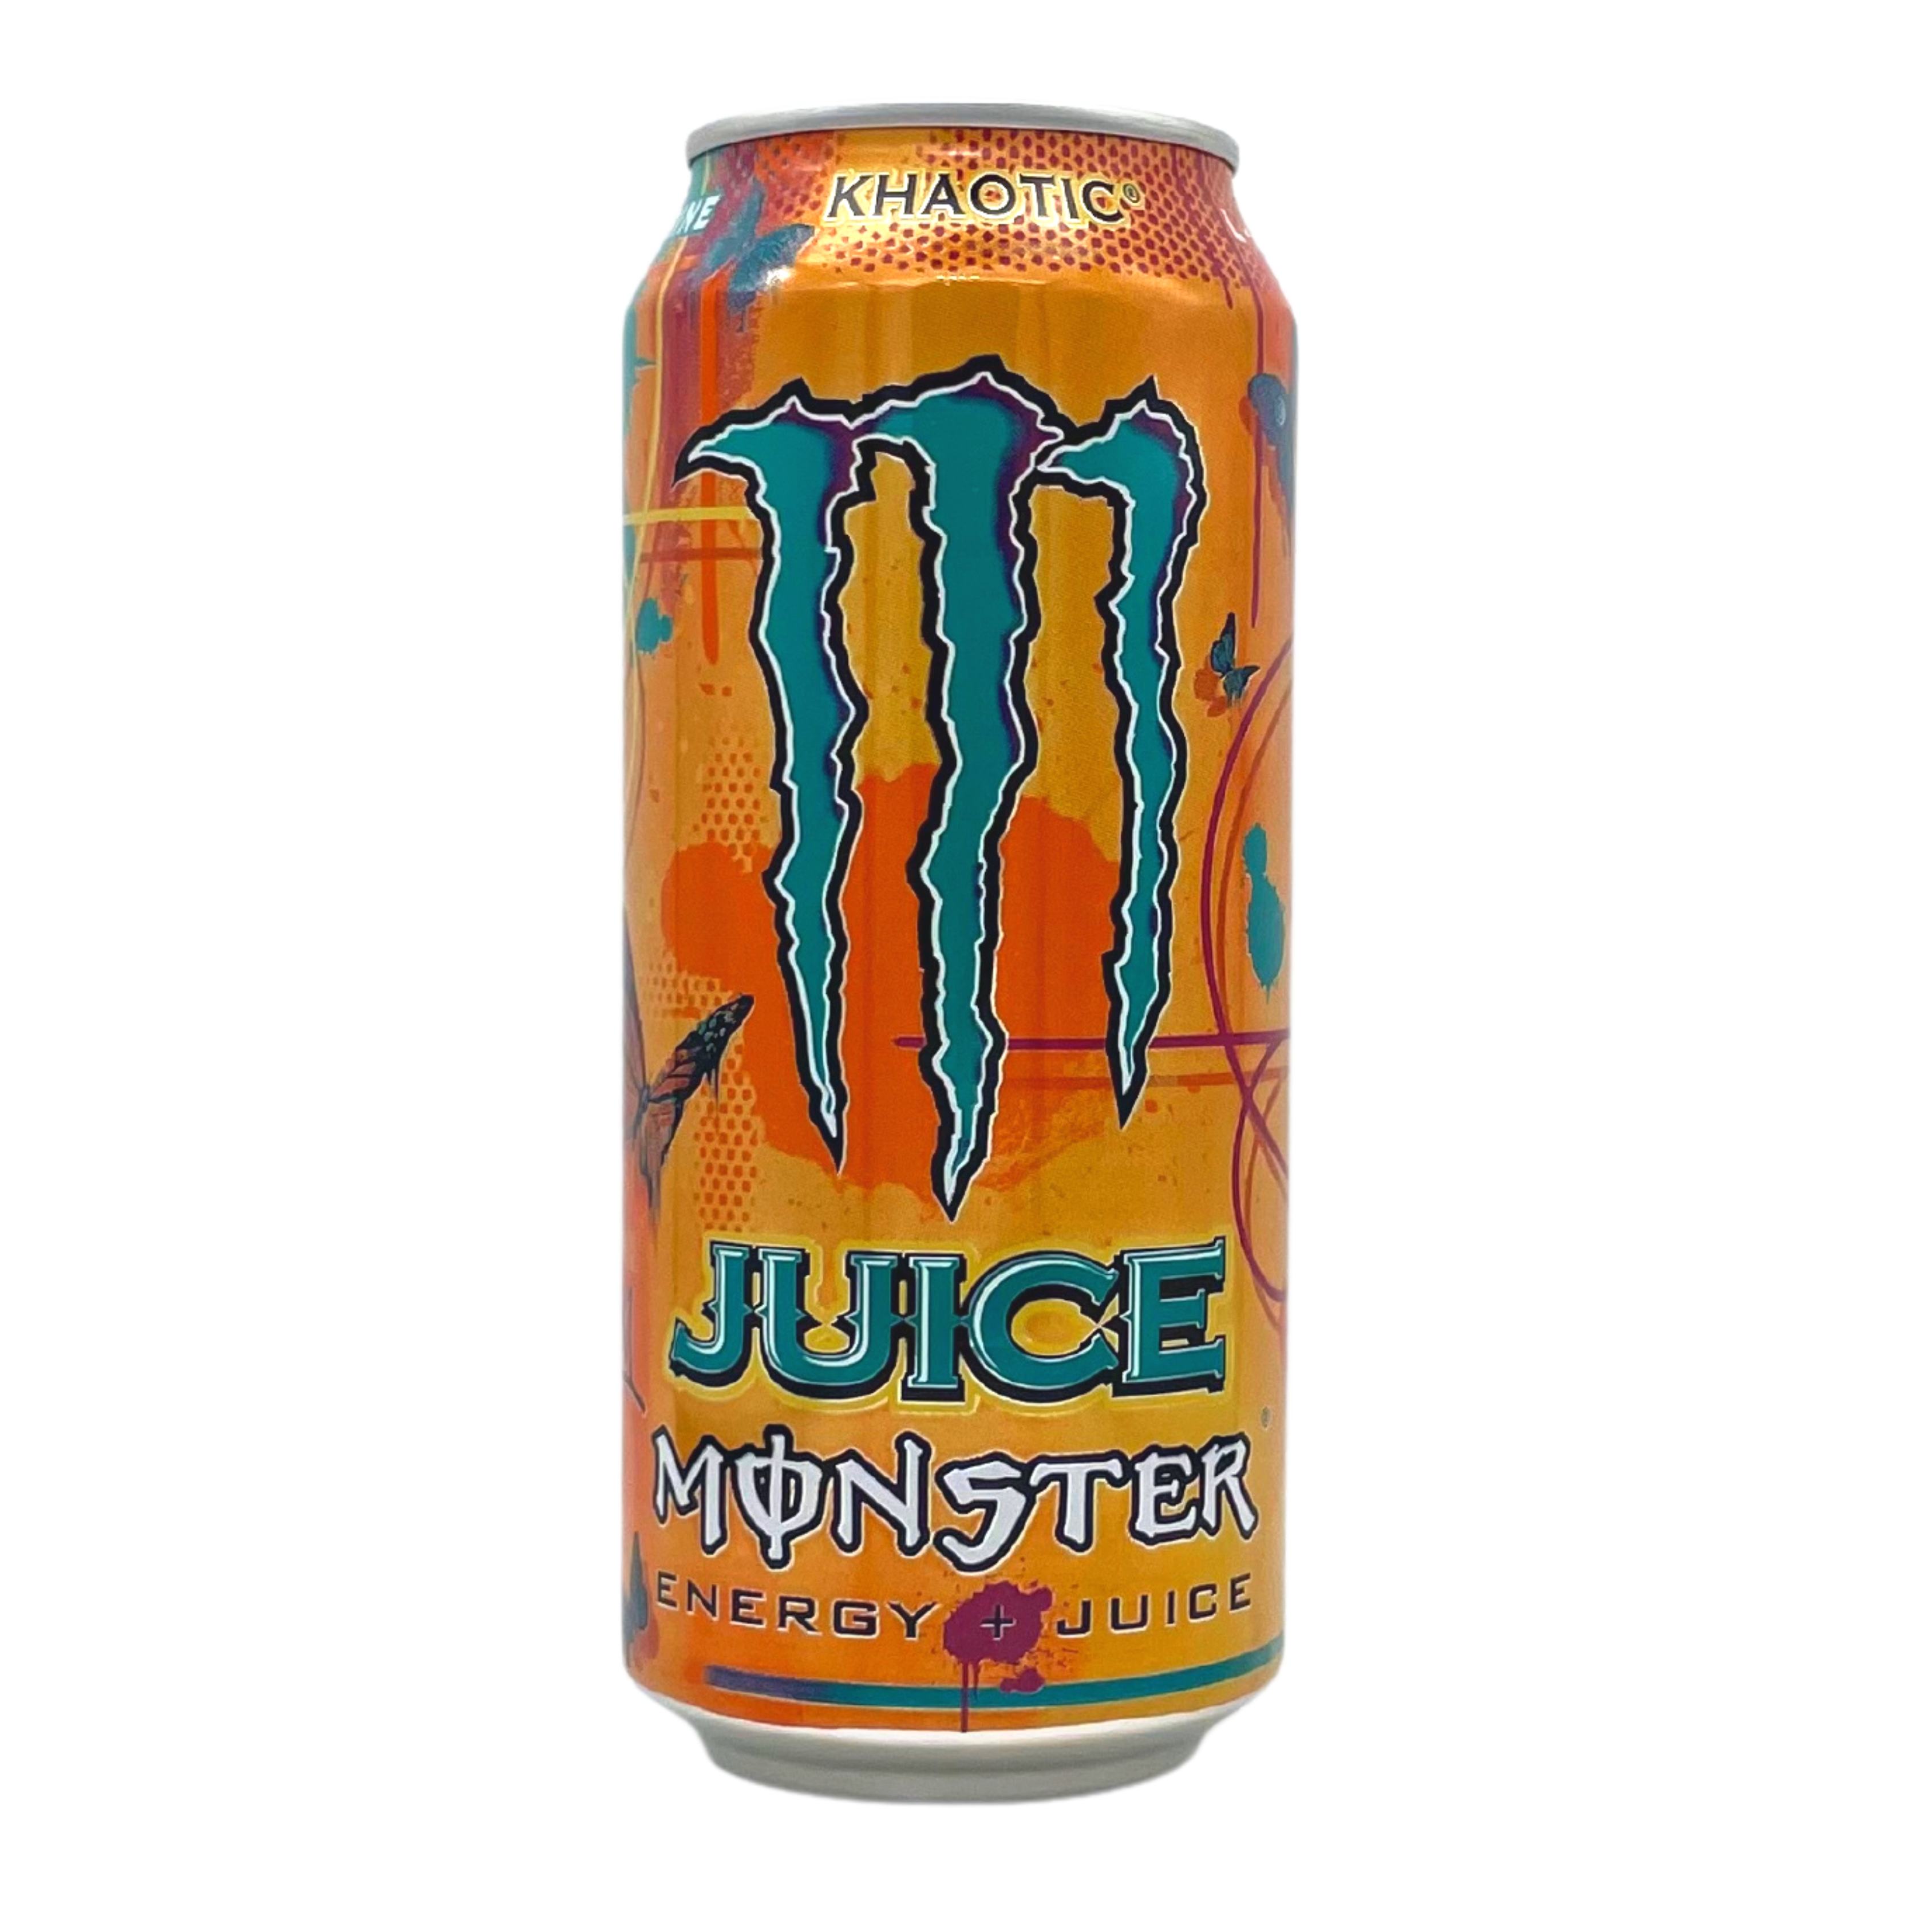 Monster Energy - Khaotic 500ml